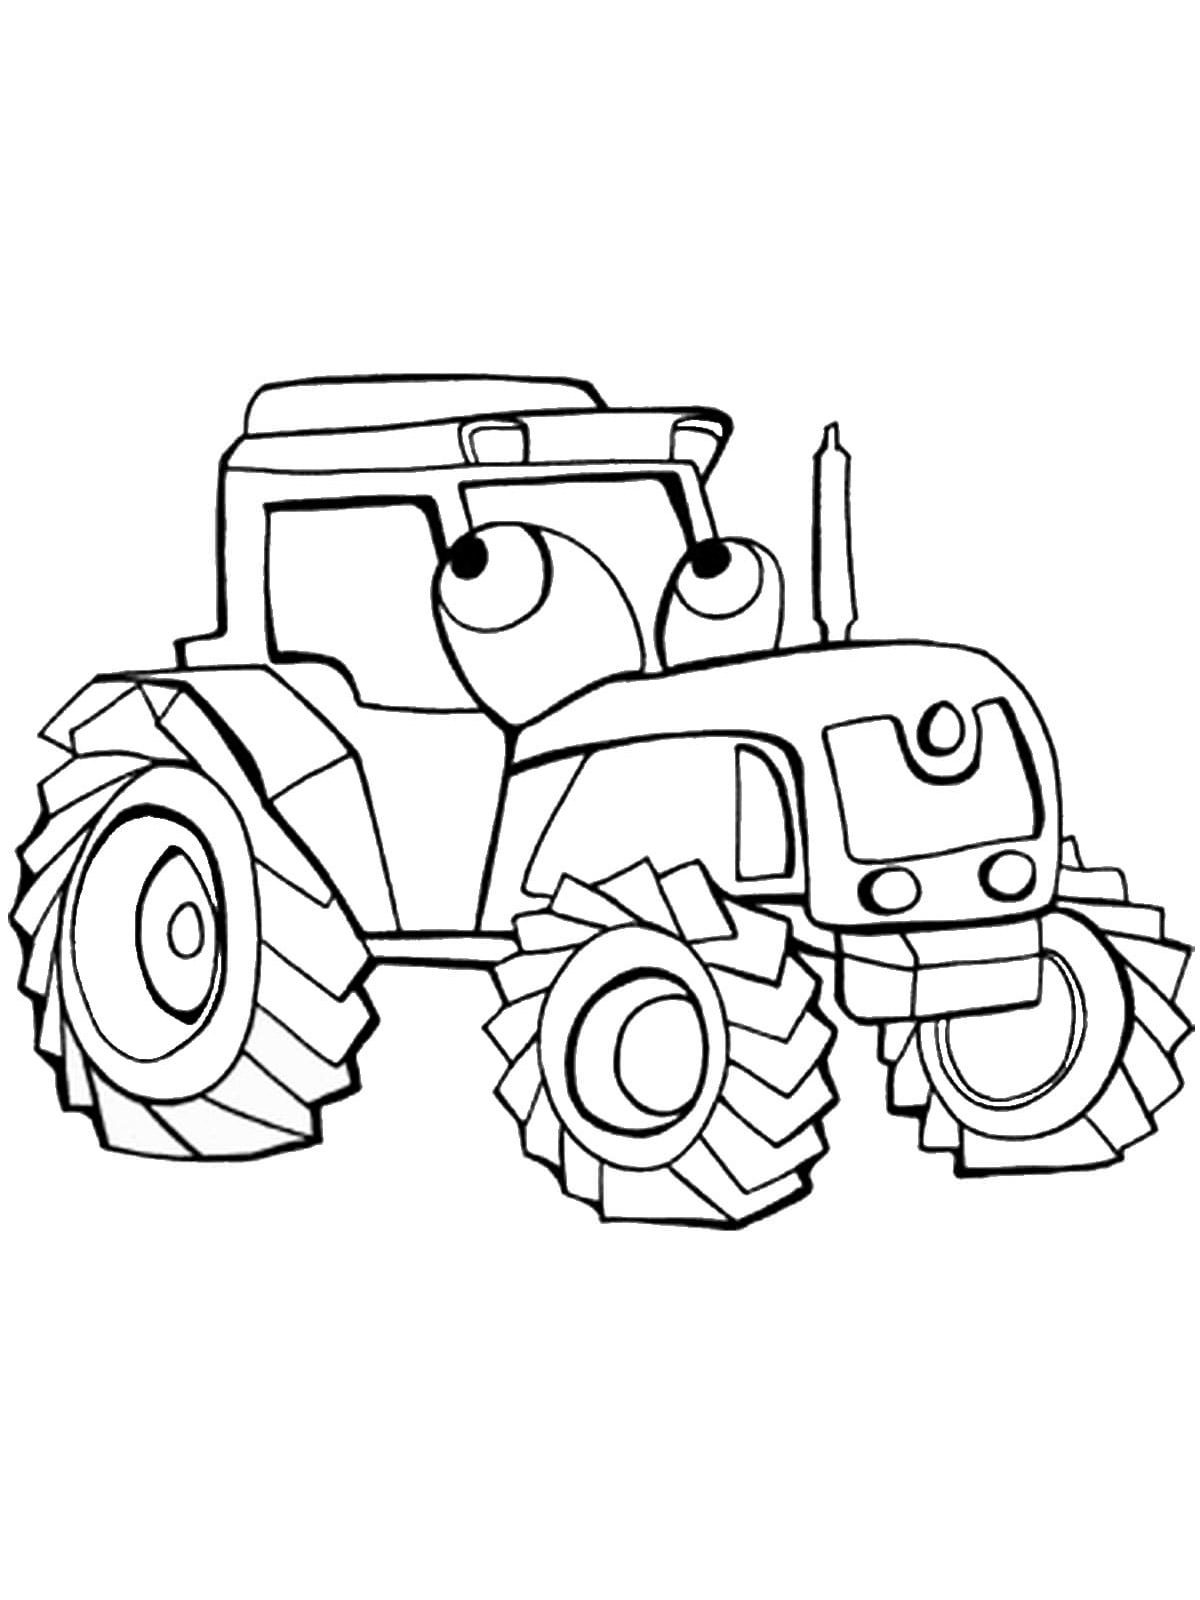 Трактор раскраска для детей 7 лет. Раскраска трактор. Раскраски для мальчиков трактор. Раскраска машина трактор. Трактор рисунок.